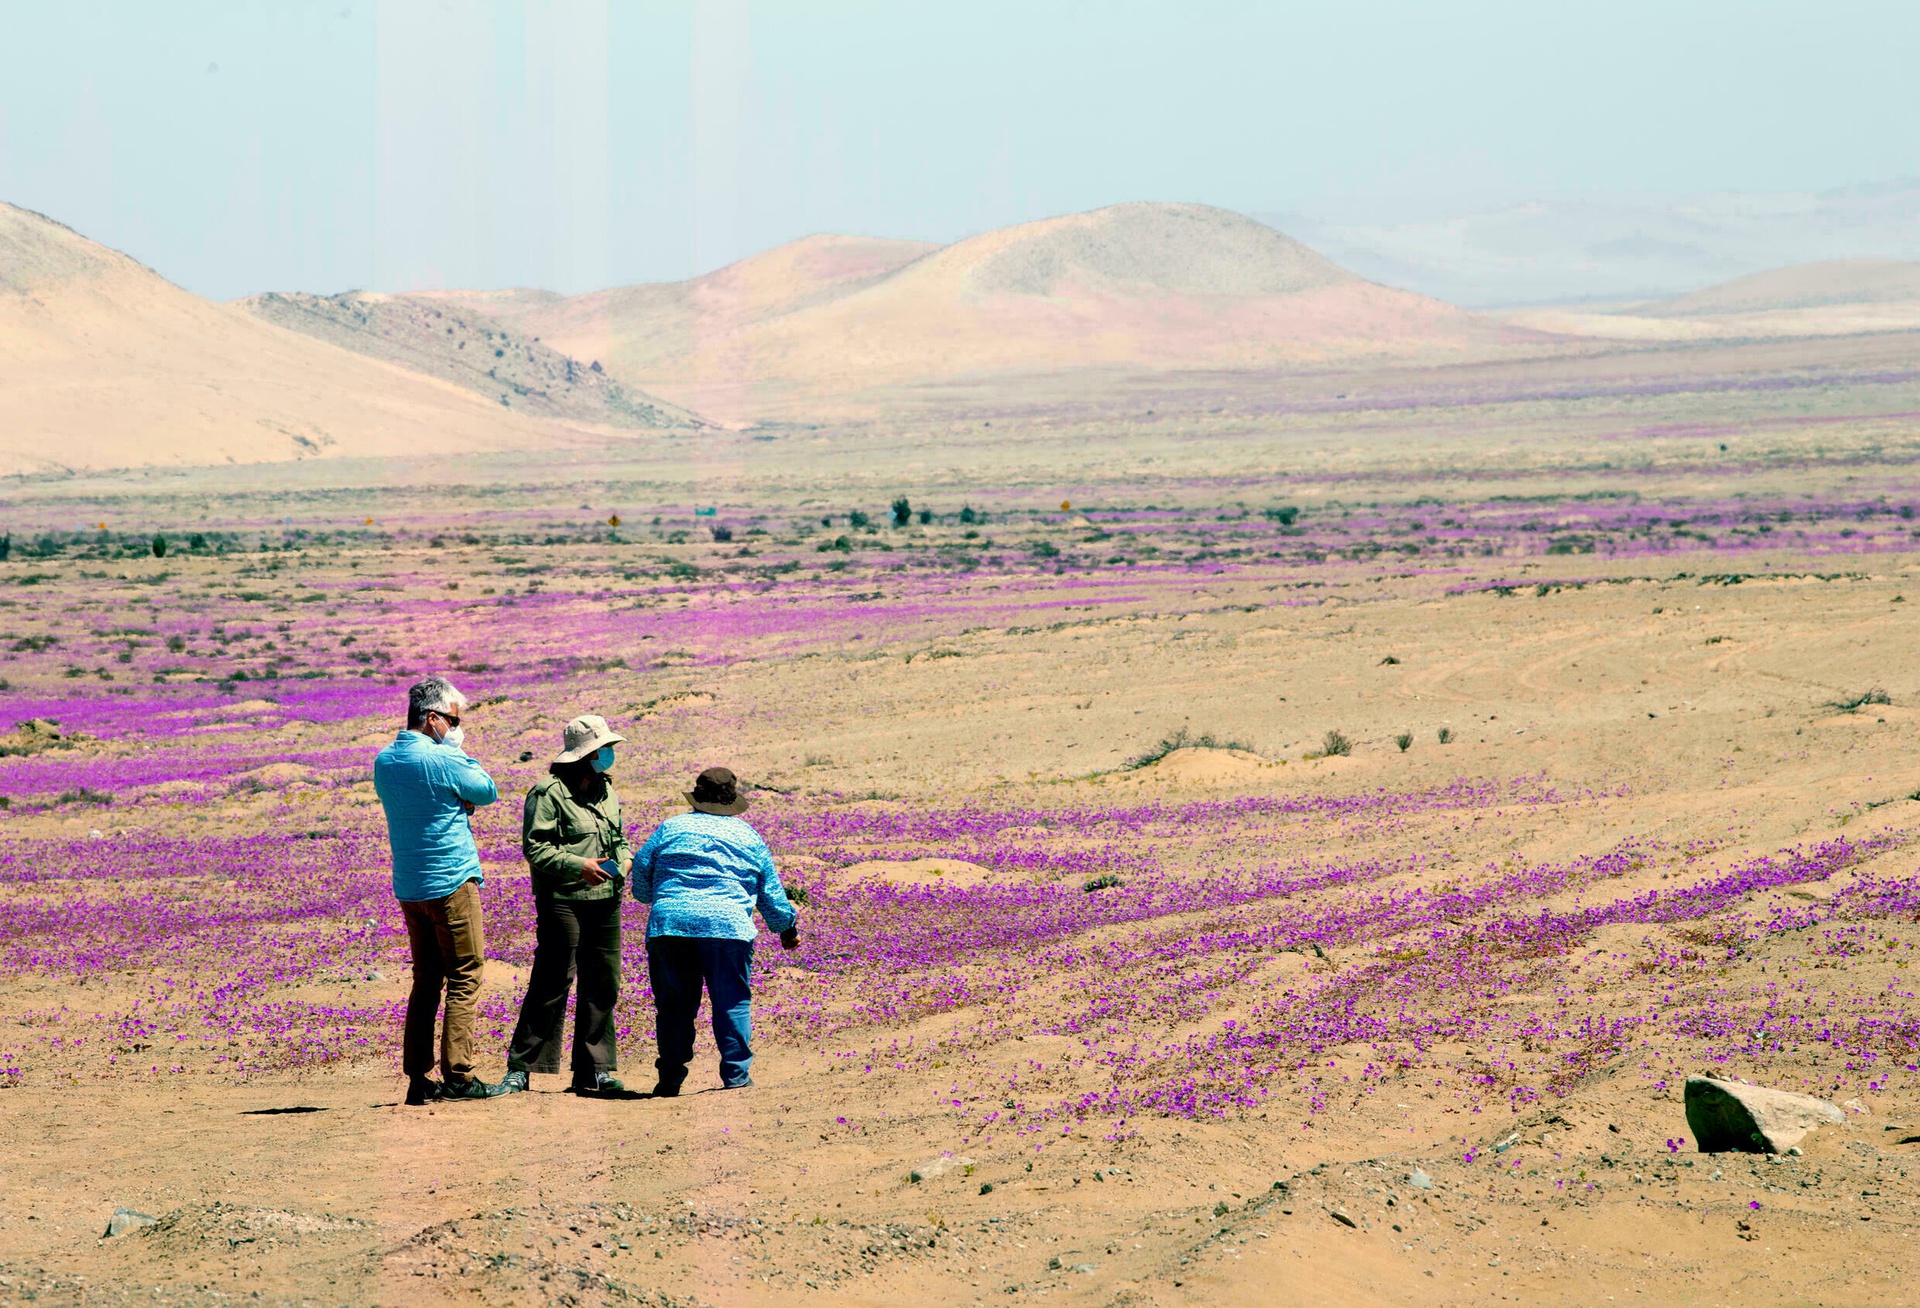 Kì diệu thảm hoa nở rực rỡ trên sa mạc khô cằn nhất thế giới - 6